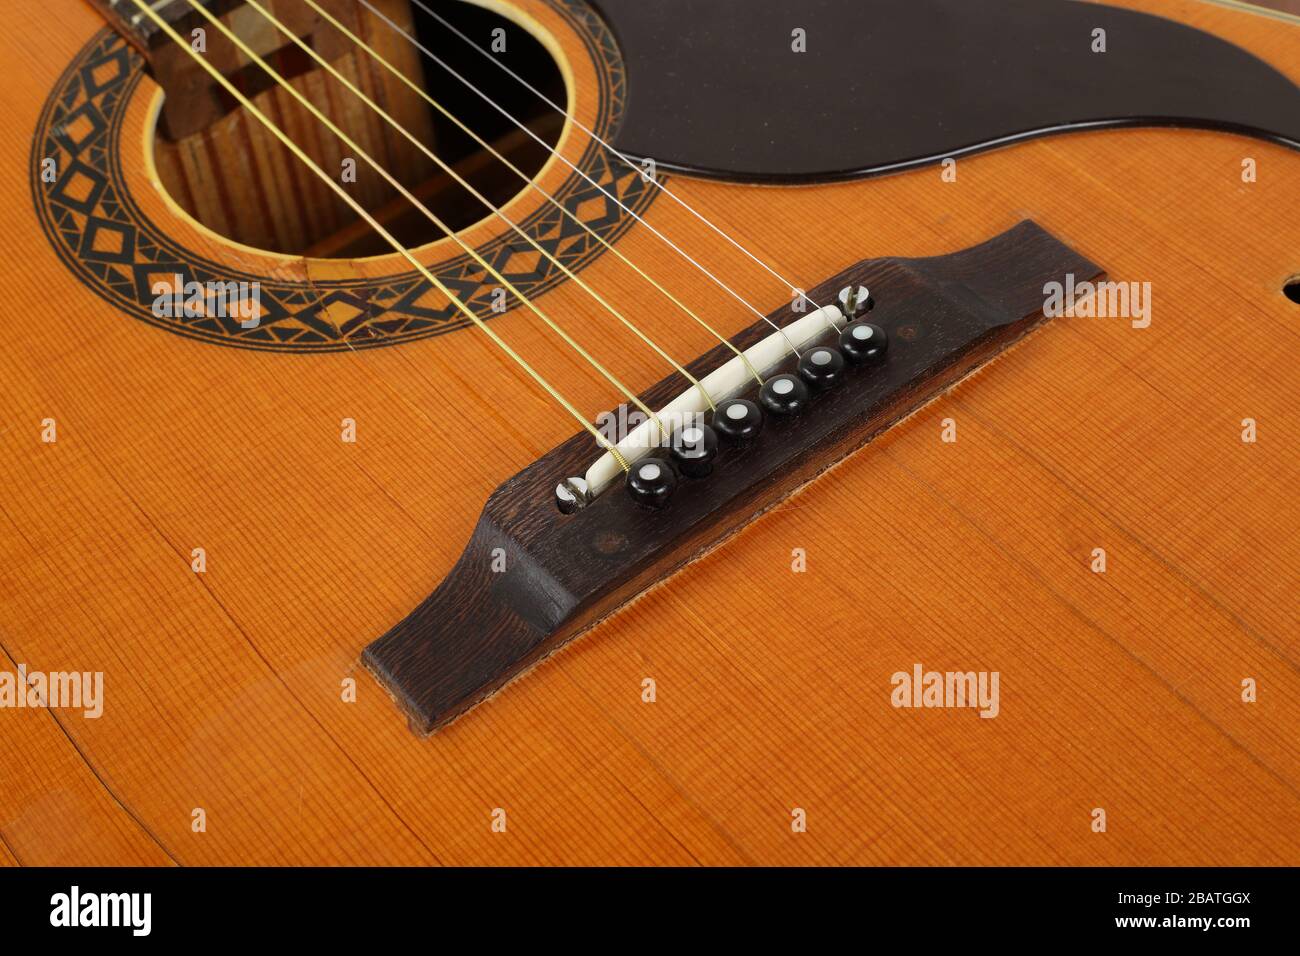 Instrument de musique - Fragment vue de dessus pickguard, pont, épingles et cordes vintage rétro guitare acoustique. Banque D'Images